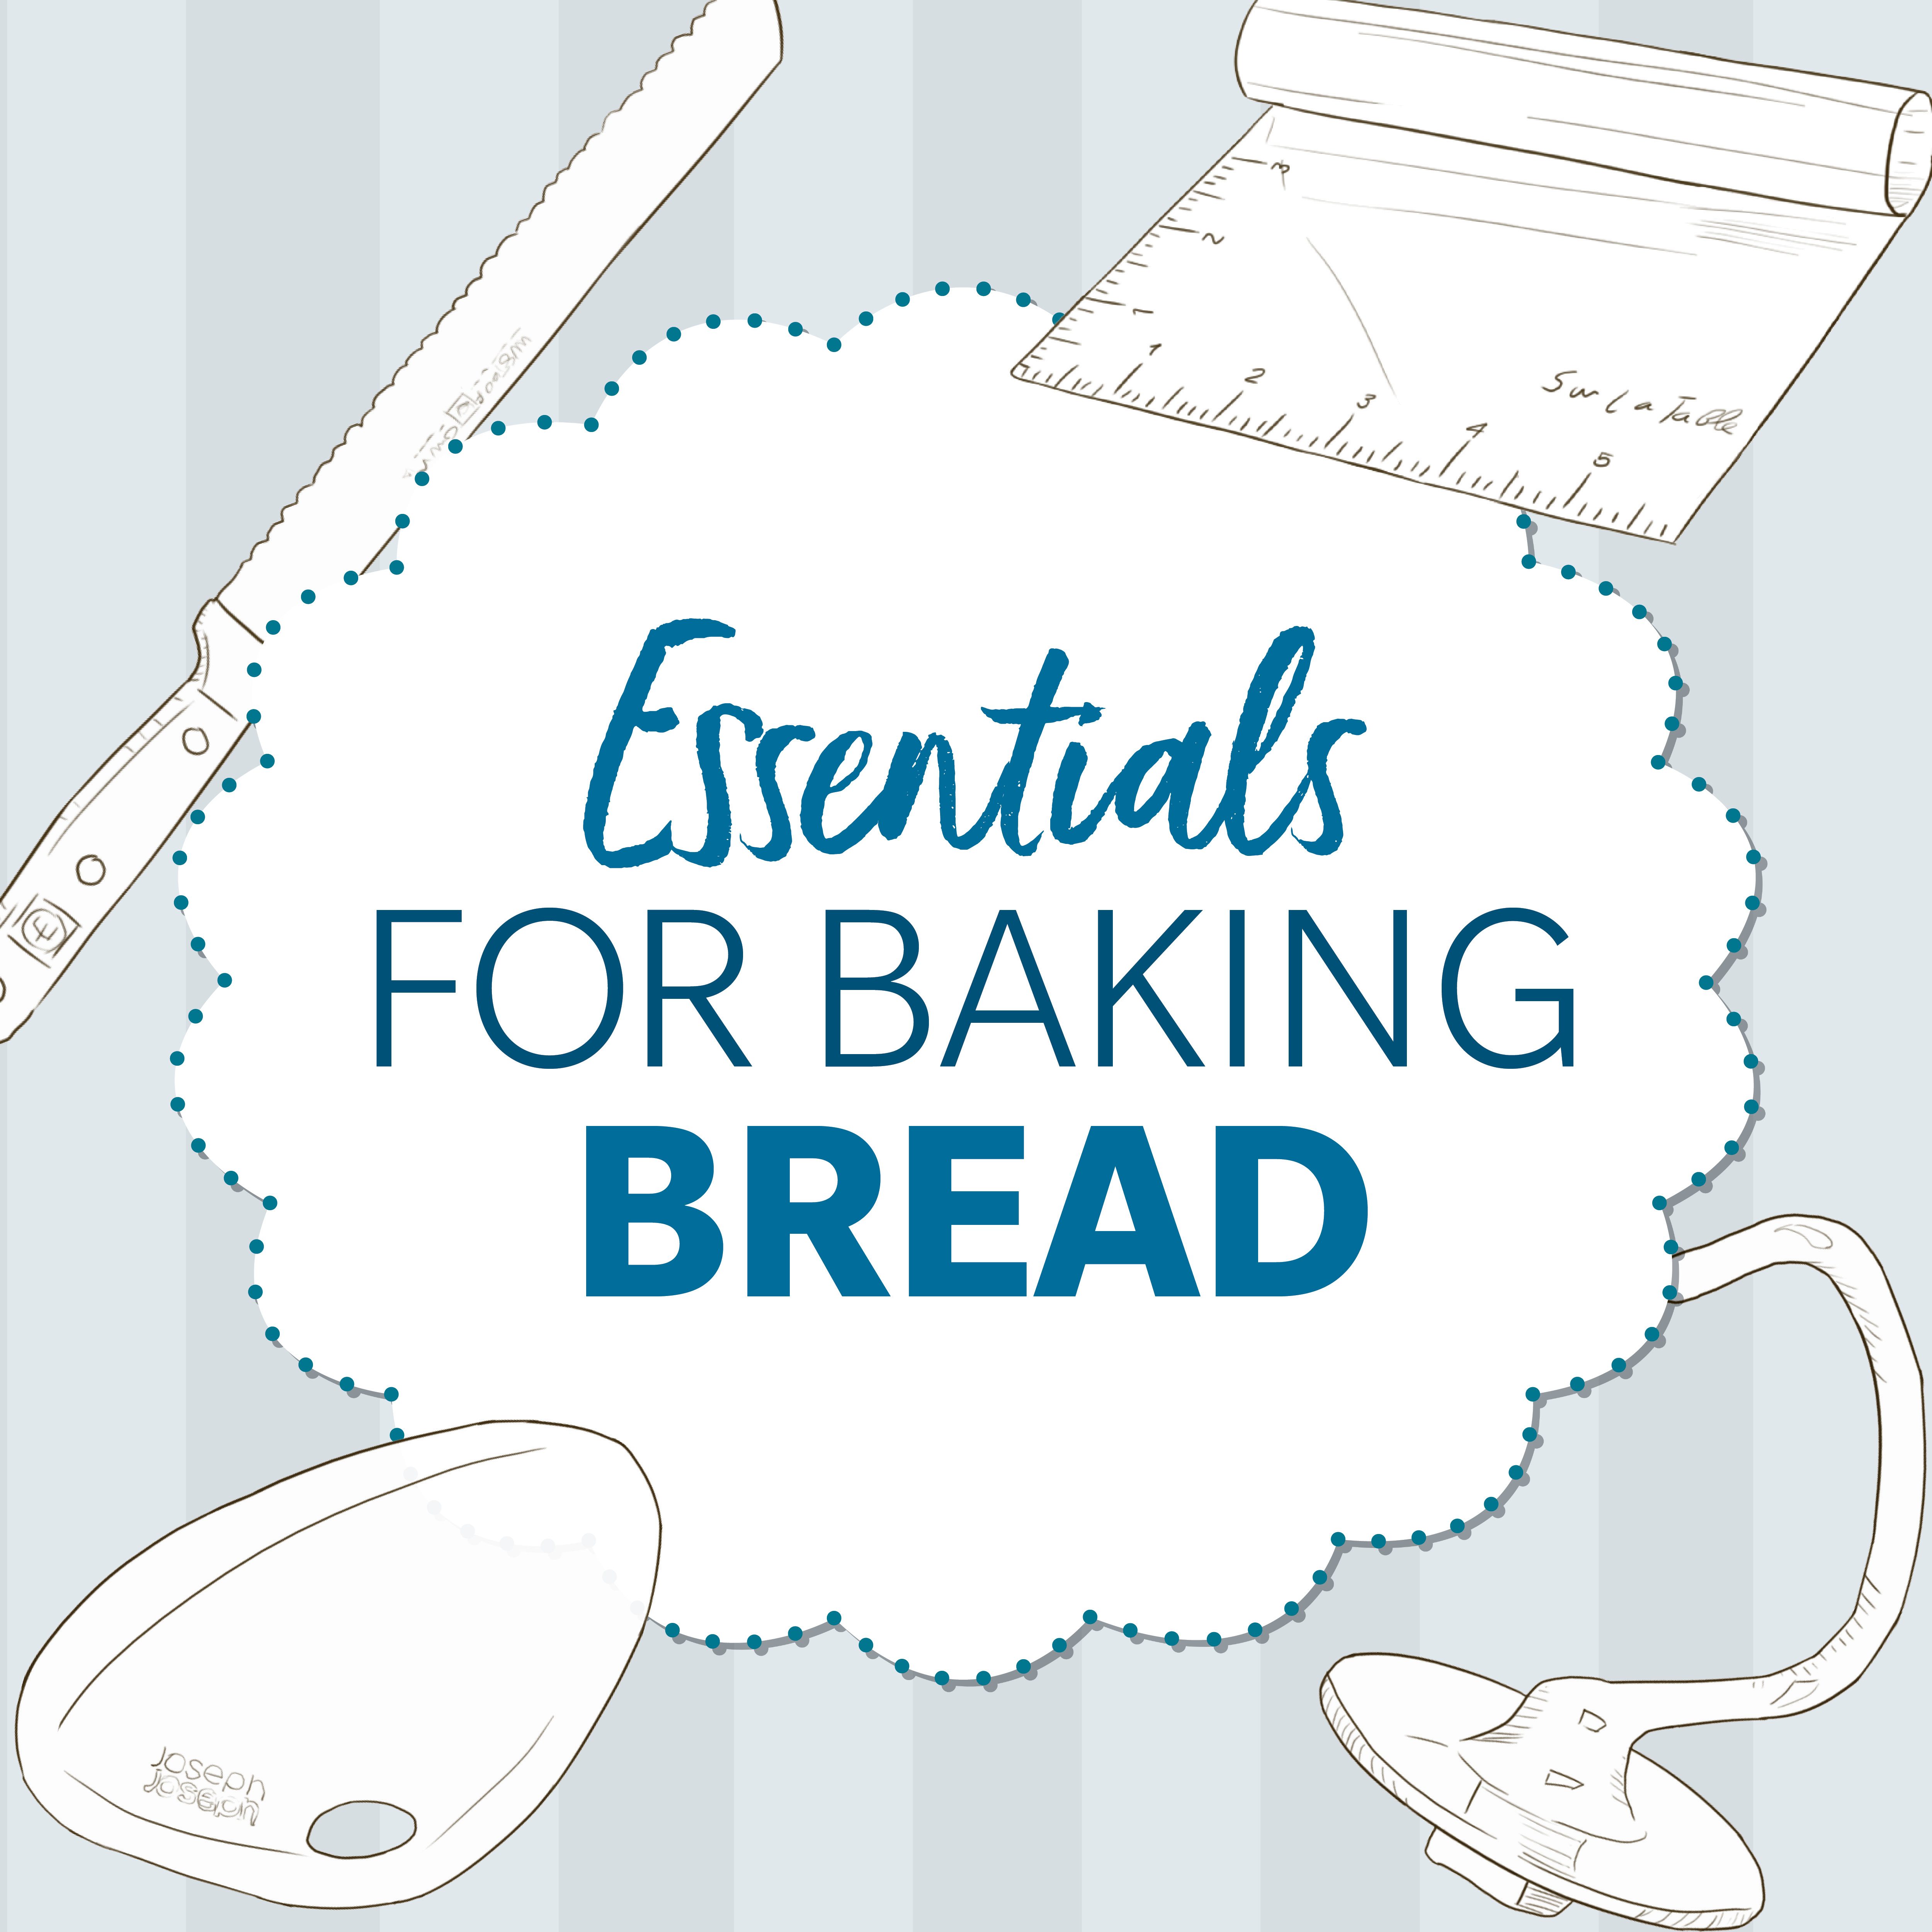 25 Must-Have Baking Essentials  Baking essentials, Baking equipment, Baking  utensils